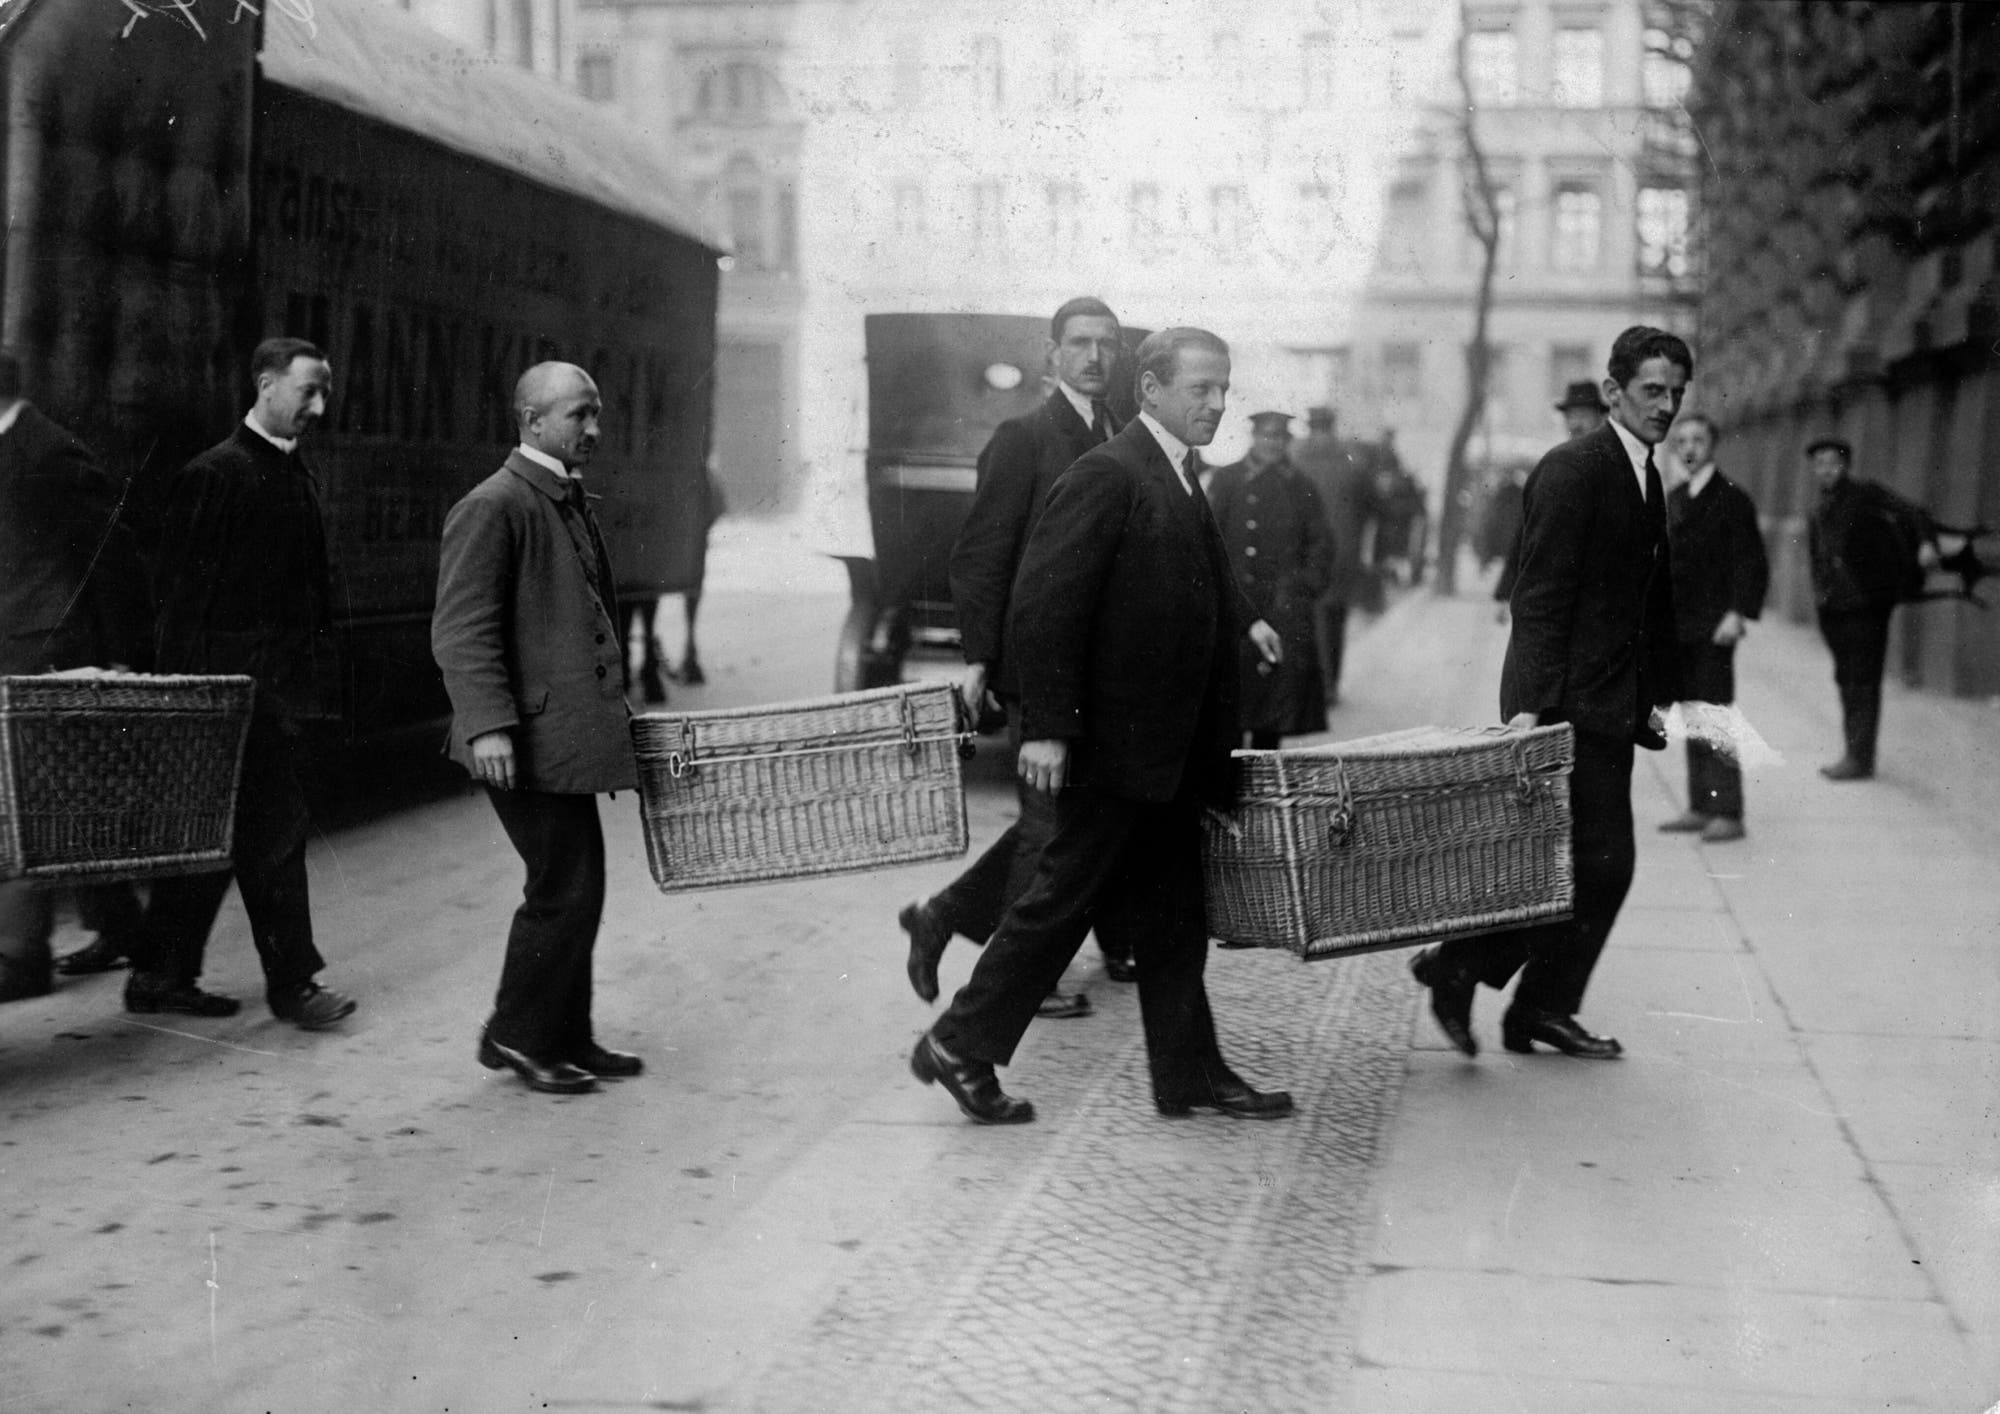 Männer transportieren Geld in Körben zu einer Bank in Berlin im Jahr 1923.